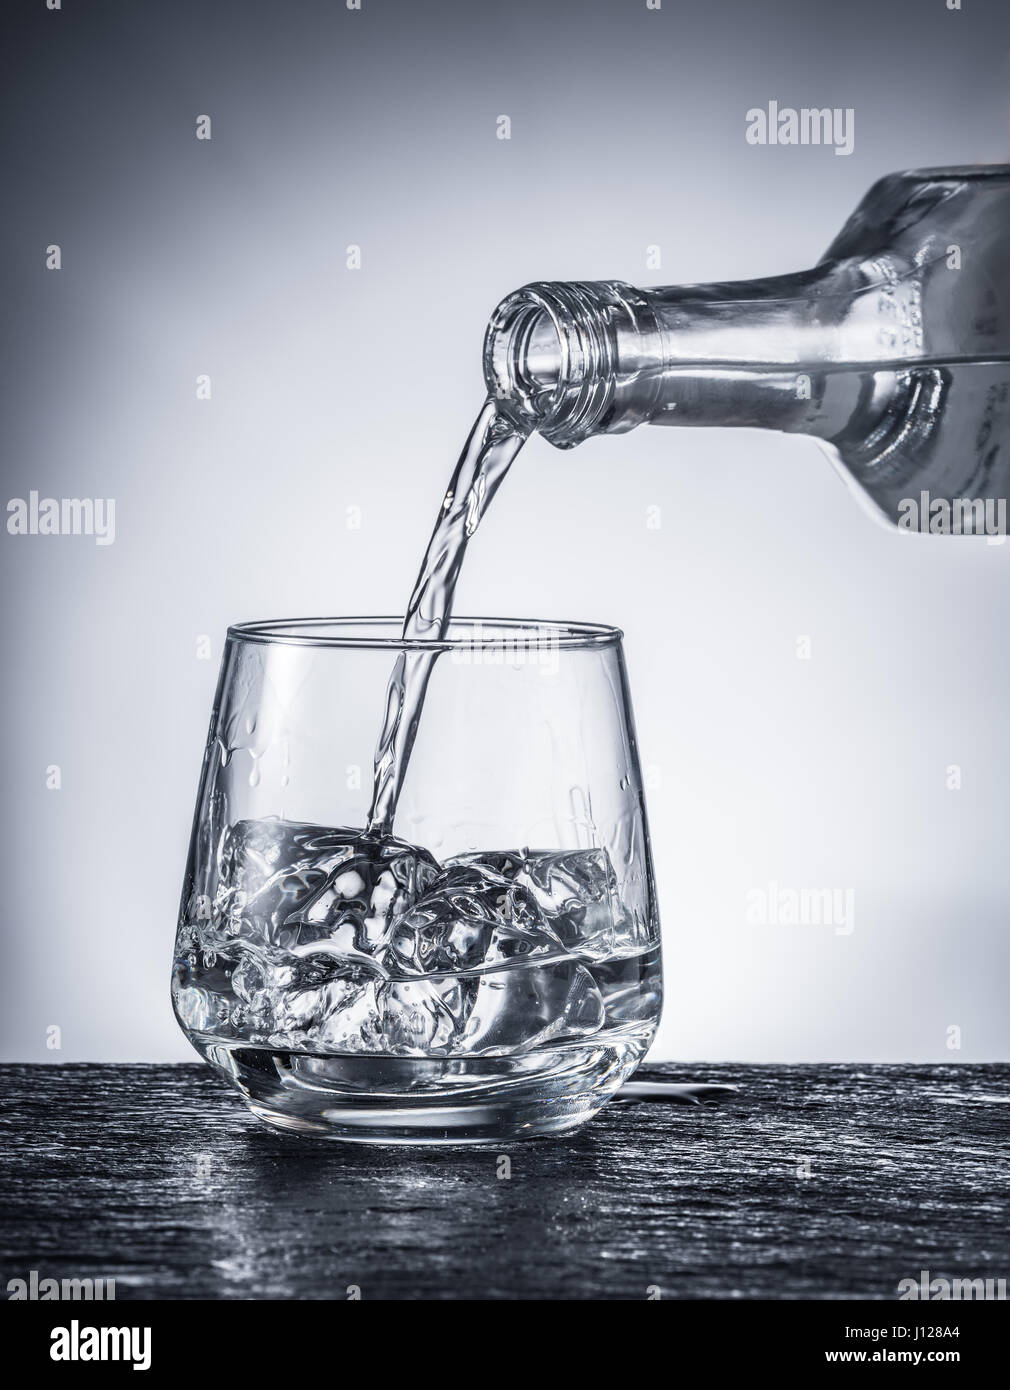 Alkohol in ein Glas gießen. Einfarbiges Bild. Stockfoto